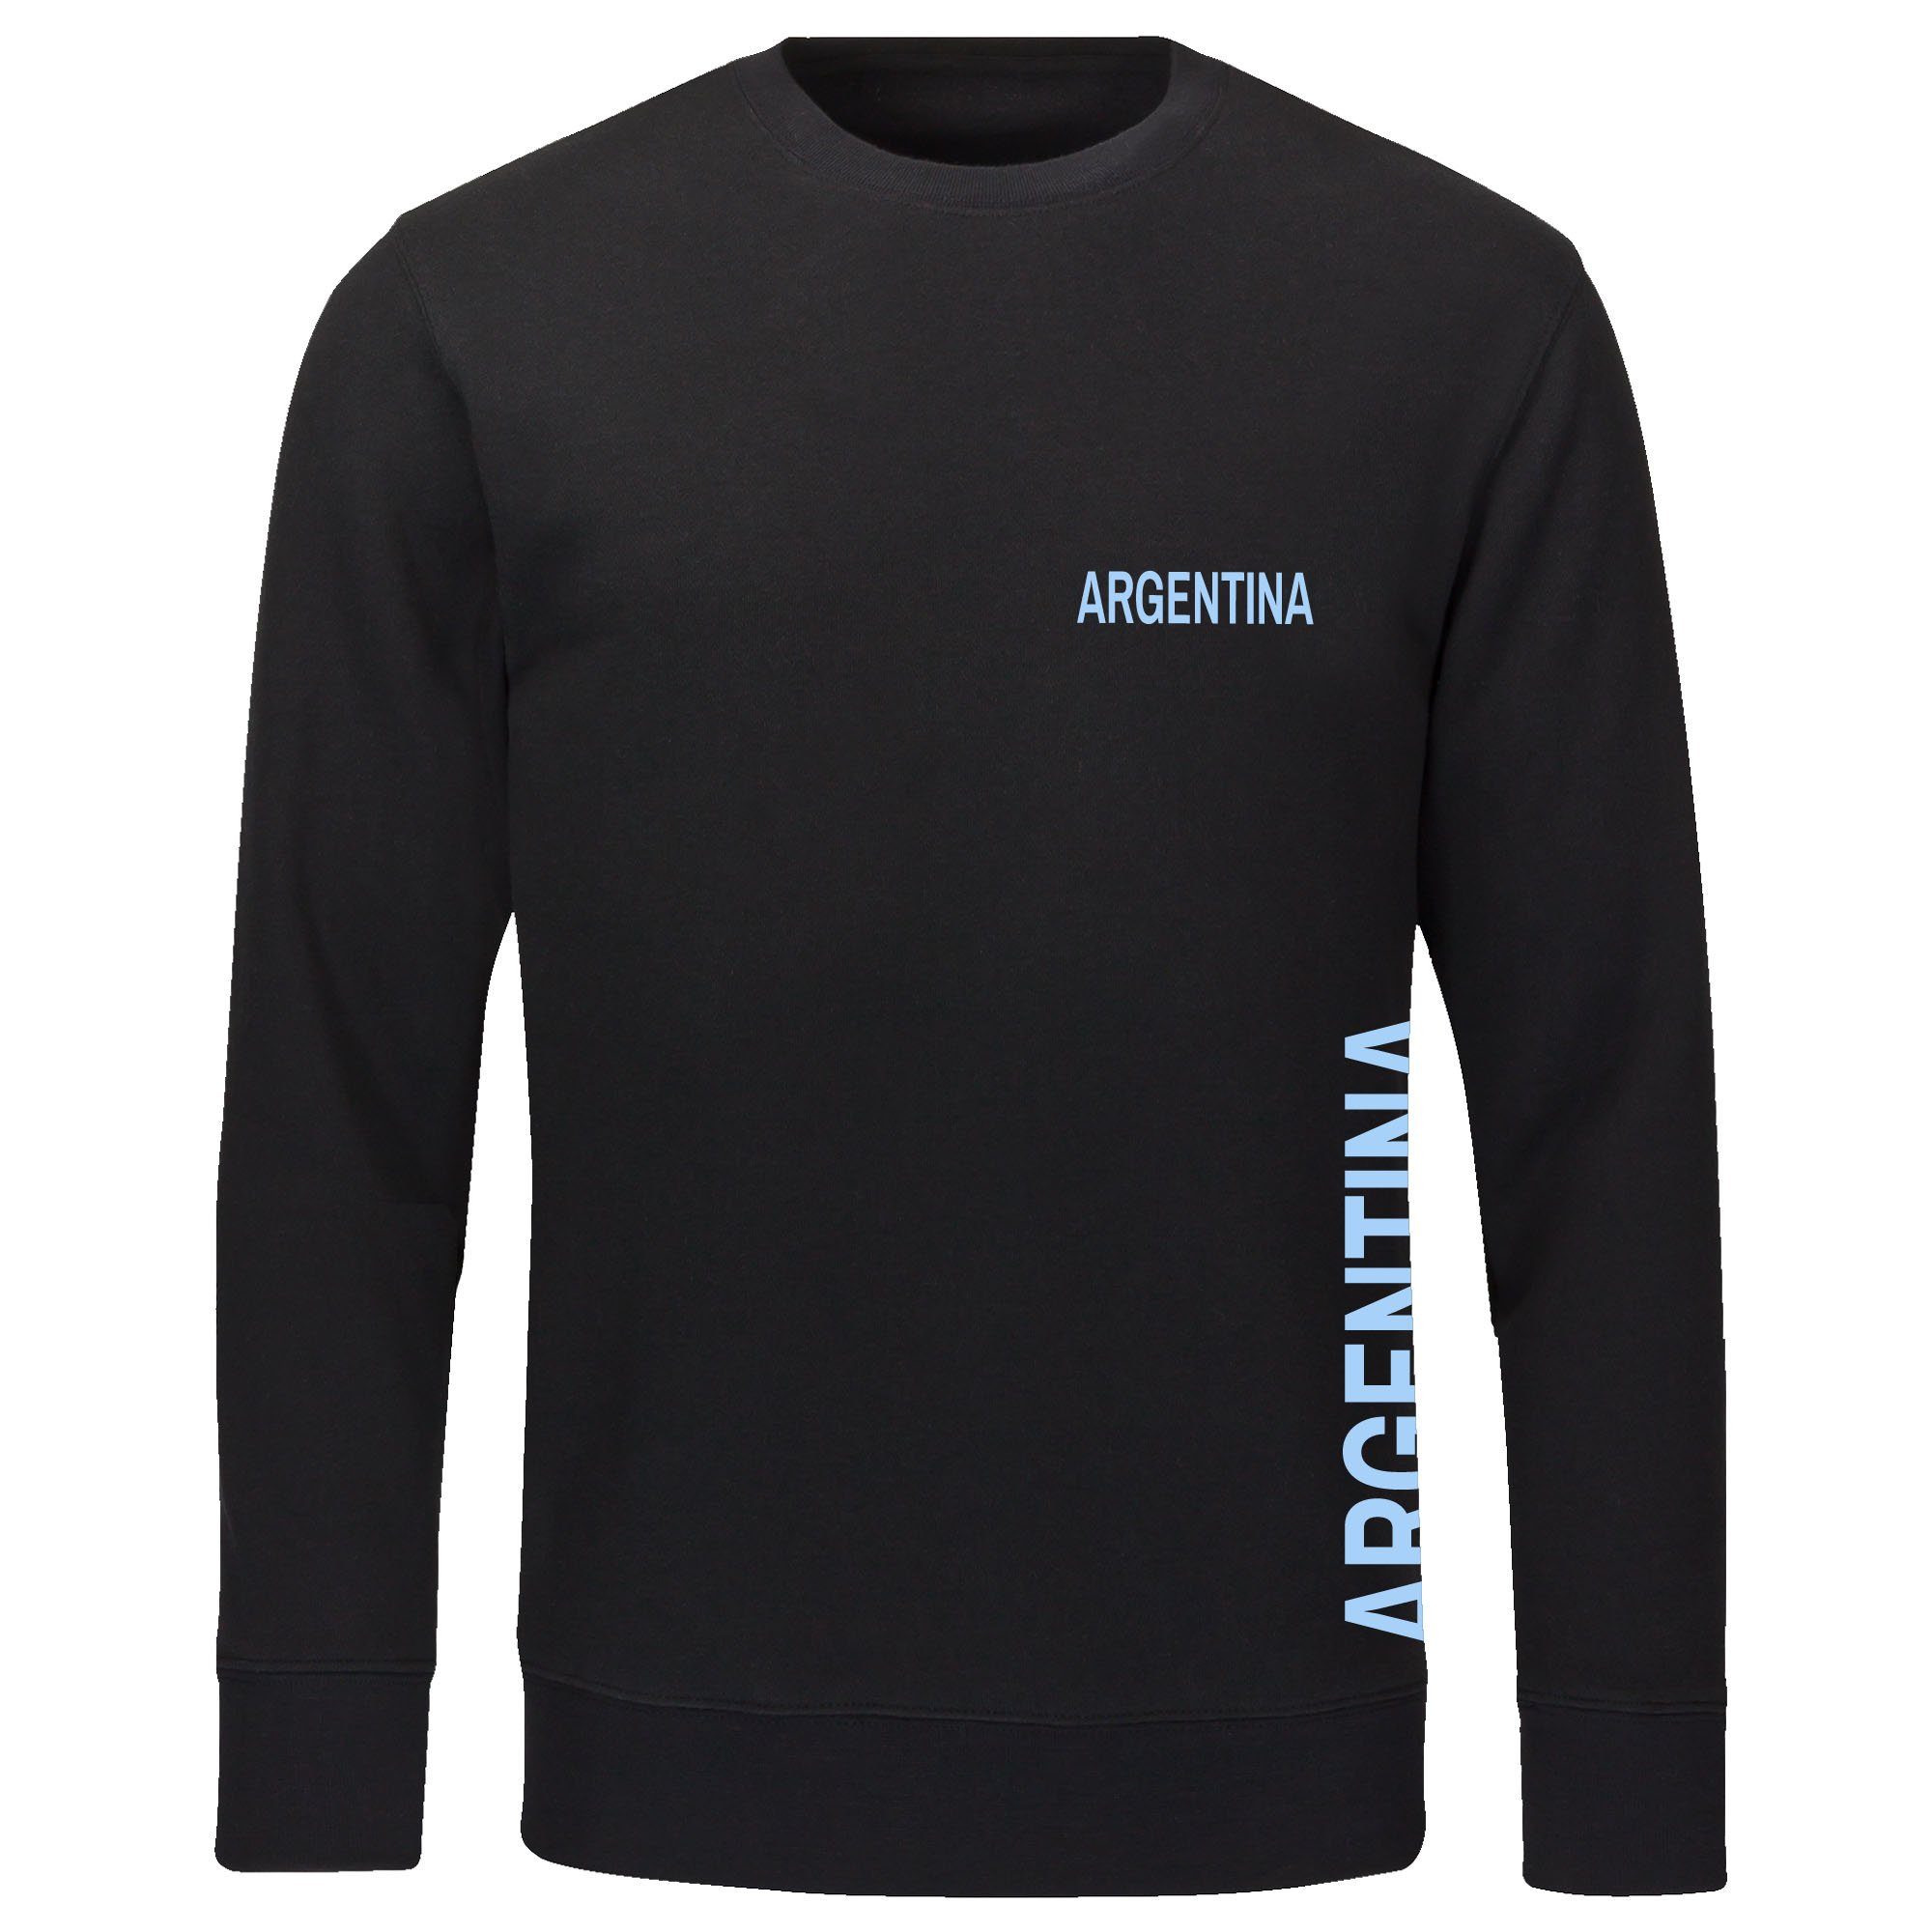 multifanshop Sweatshirt Argentina - Brust & Seite - Pullover